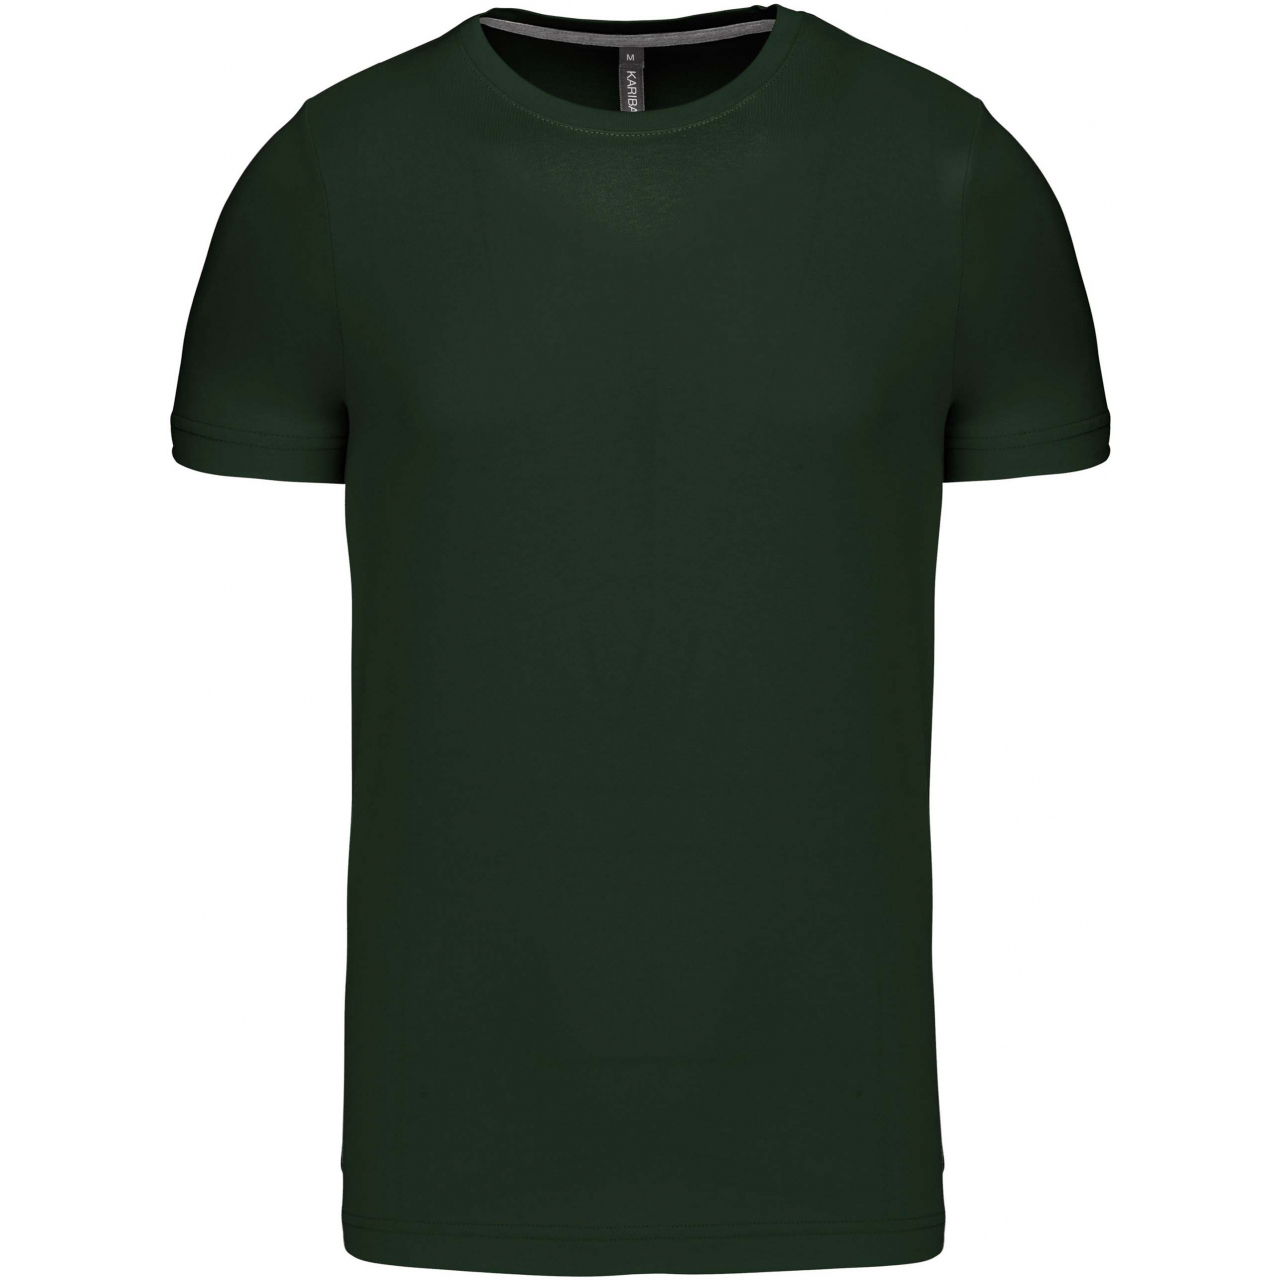 Pánské tričko Kariban krátký rukáv - tmavě zelené, XL